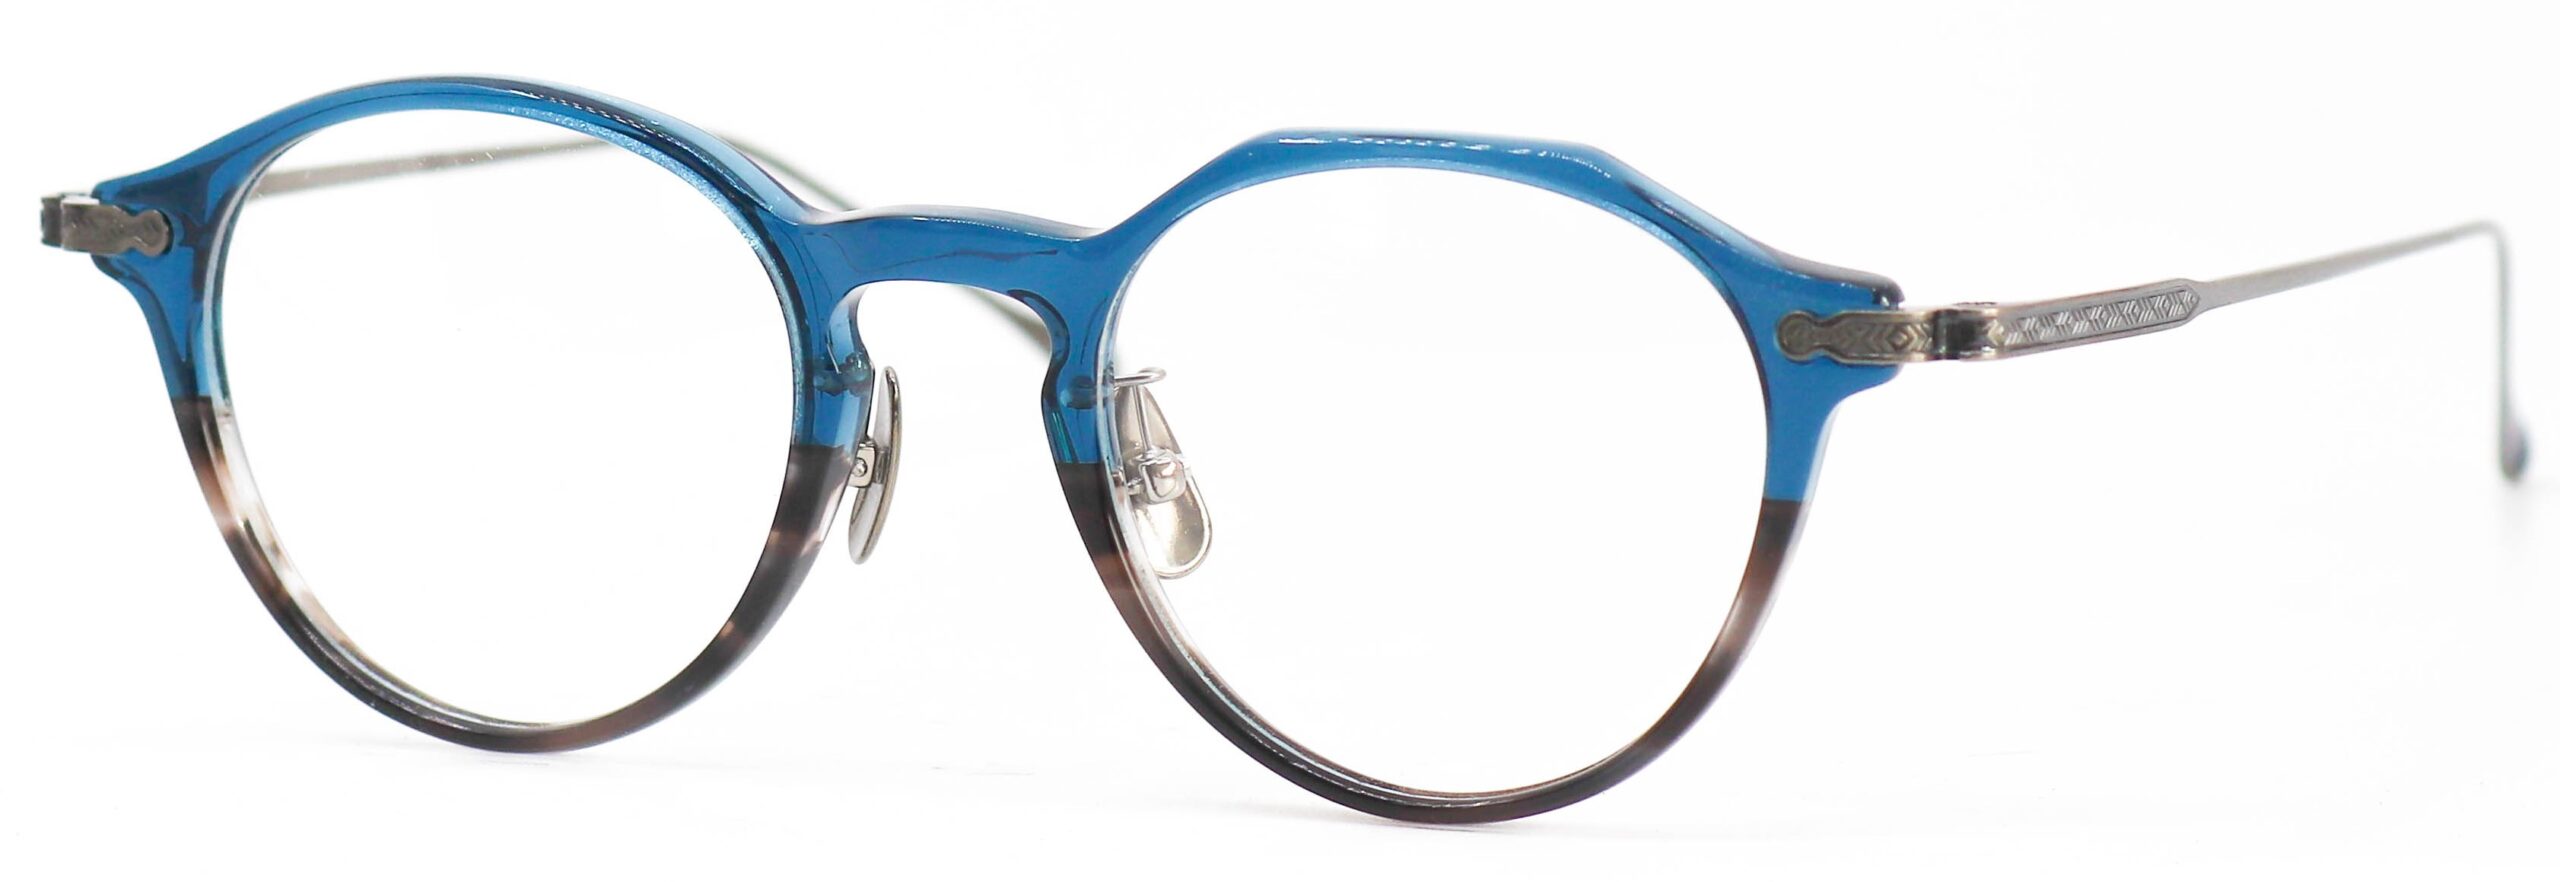 眼鏡のカラータイプC-6 Blue-GraySasa/At-Silver